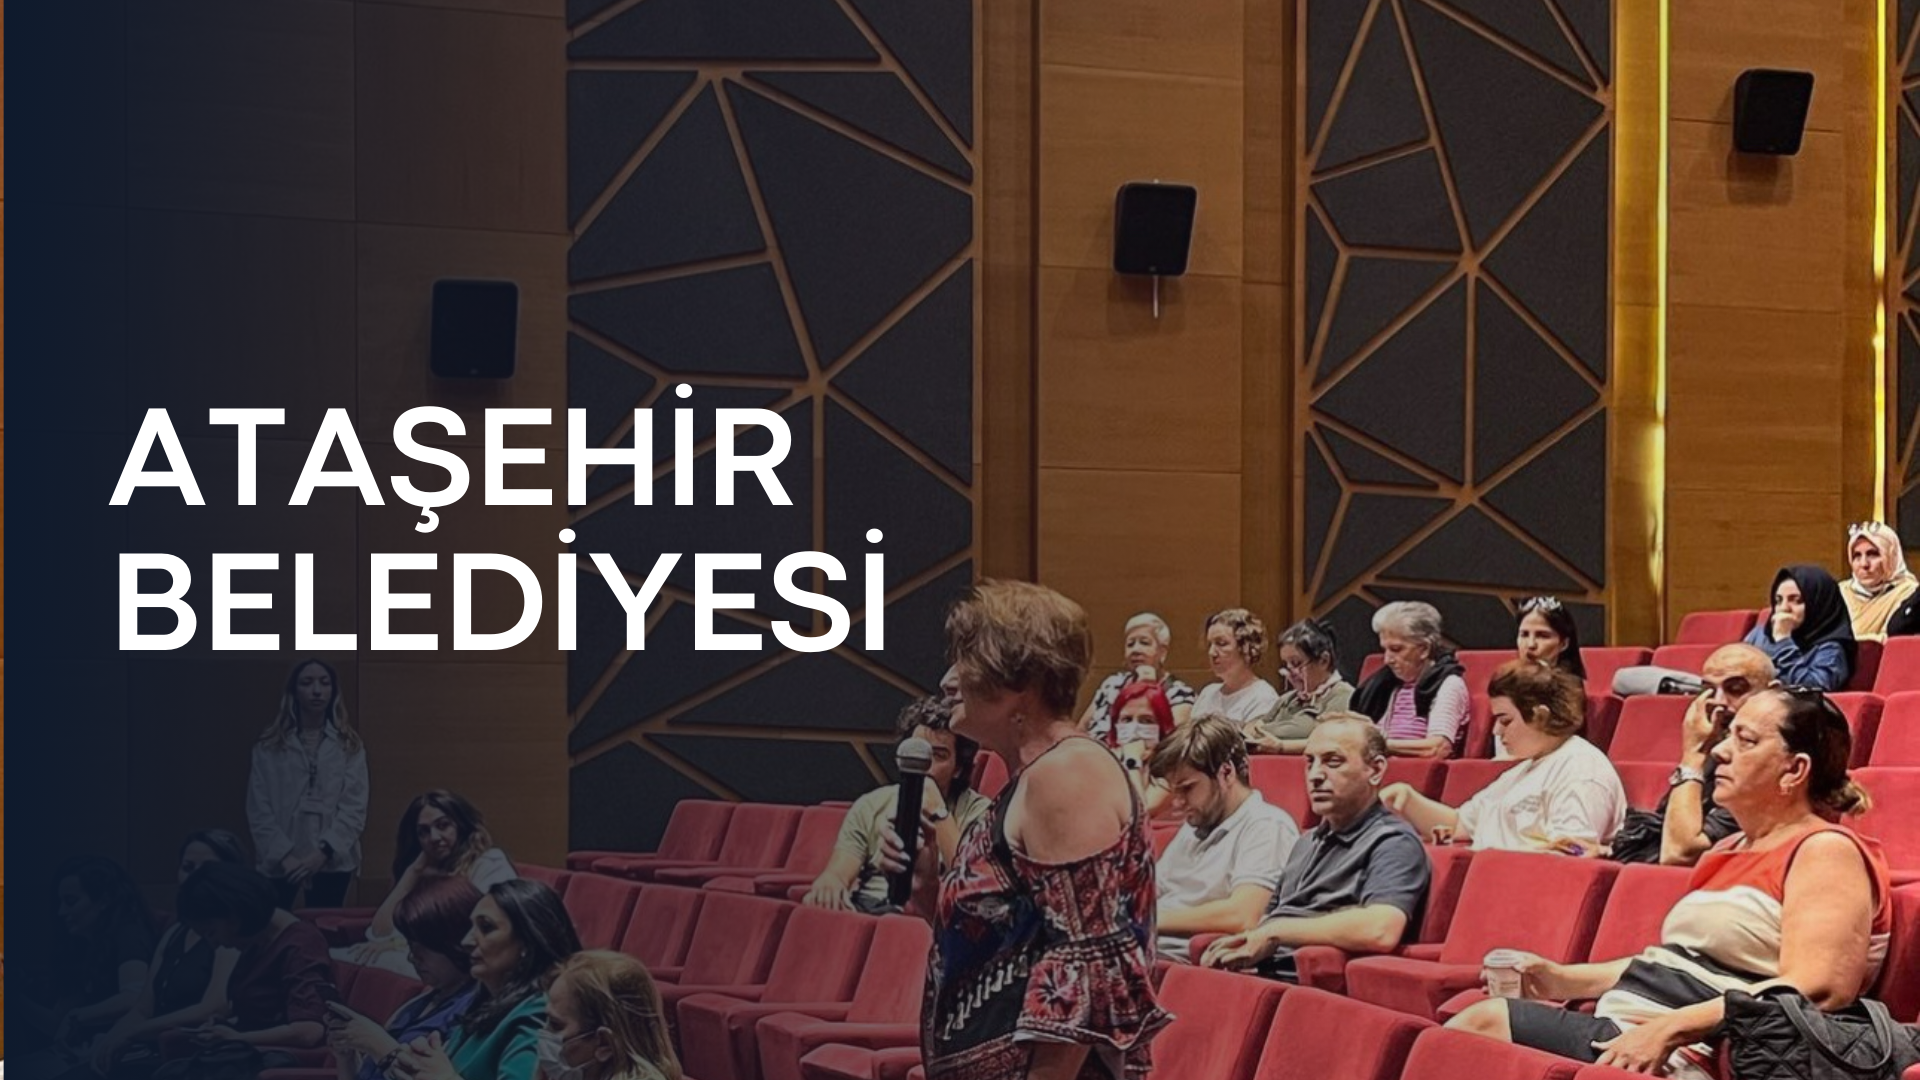 Ataşehir Belediyesi ve Rhyme Export işbirliğiyle 7 haftalık ücretsiz Etsy eğitimi düzenlendi.